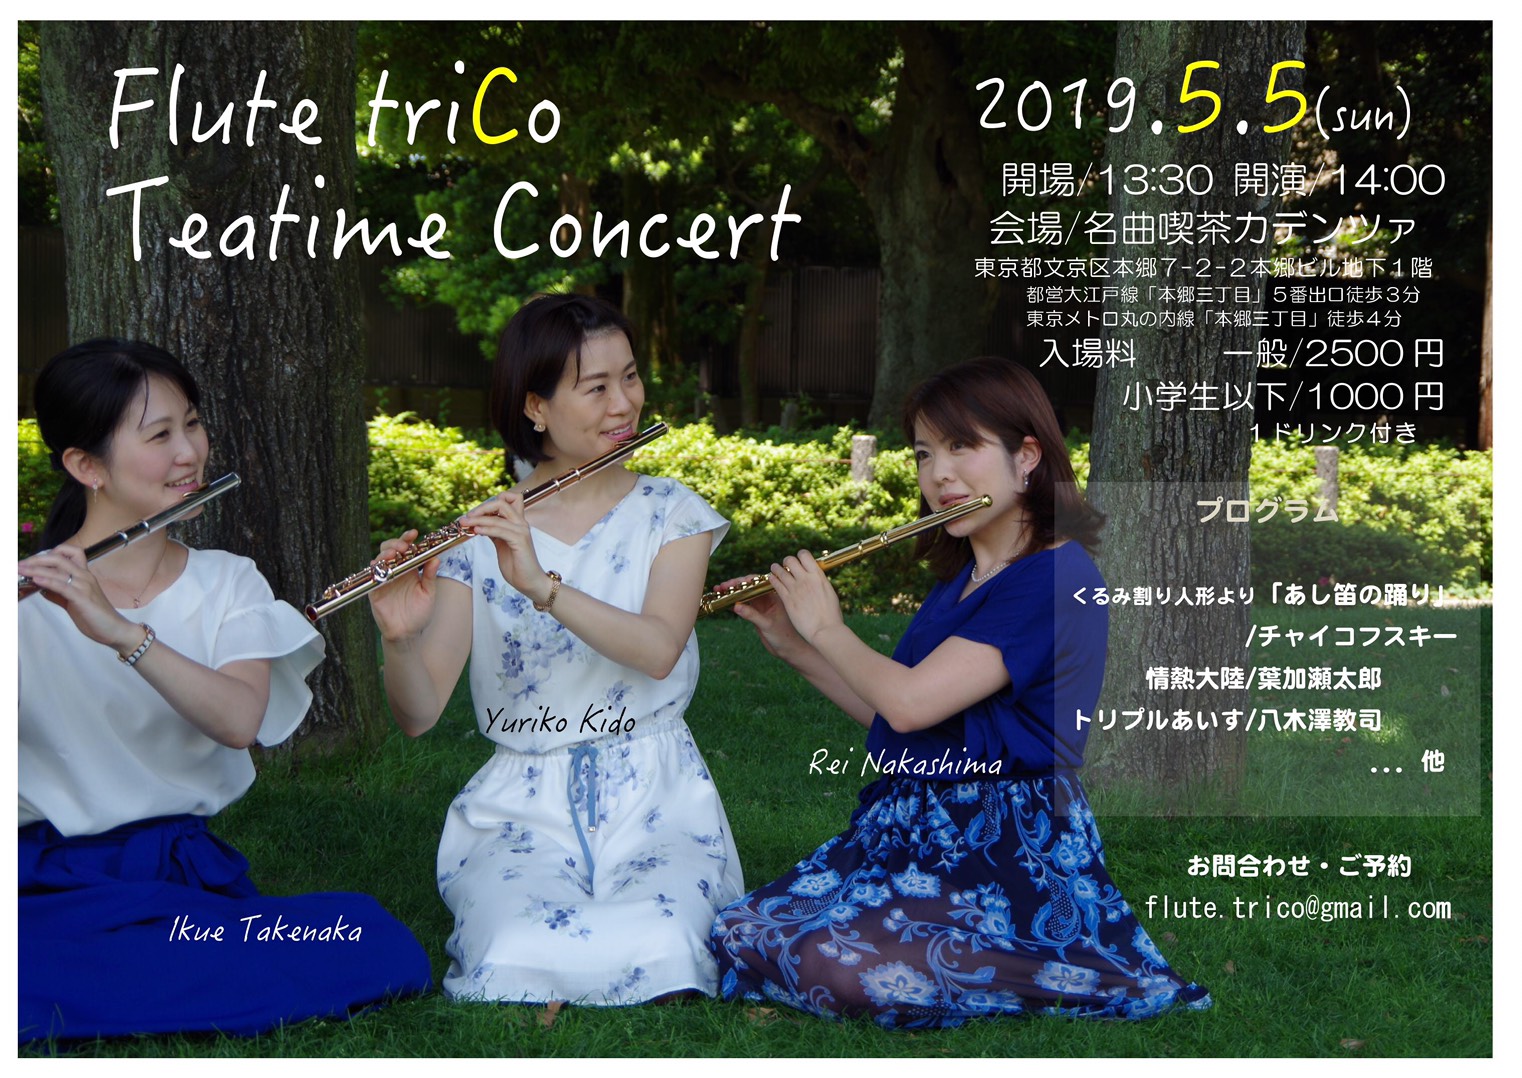 Flute triCo Teatime Concert